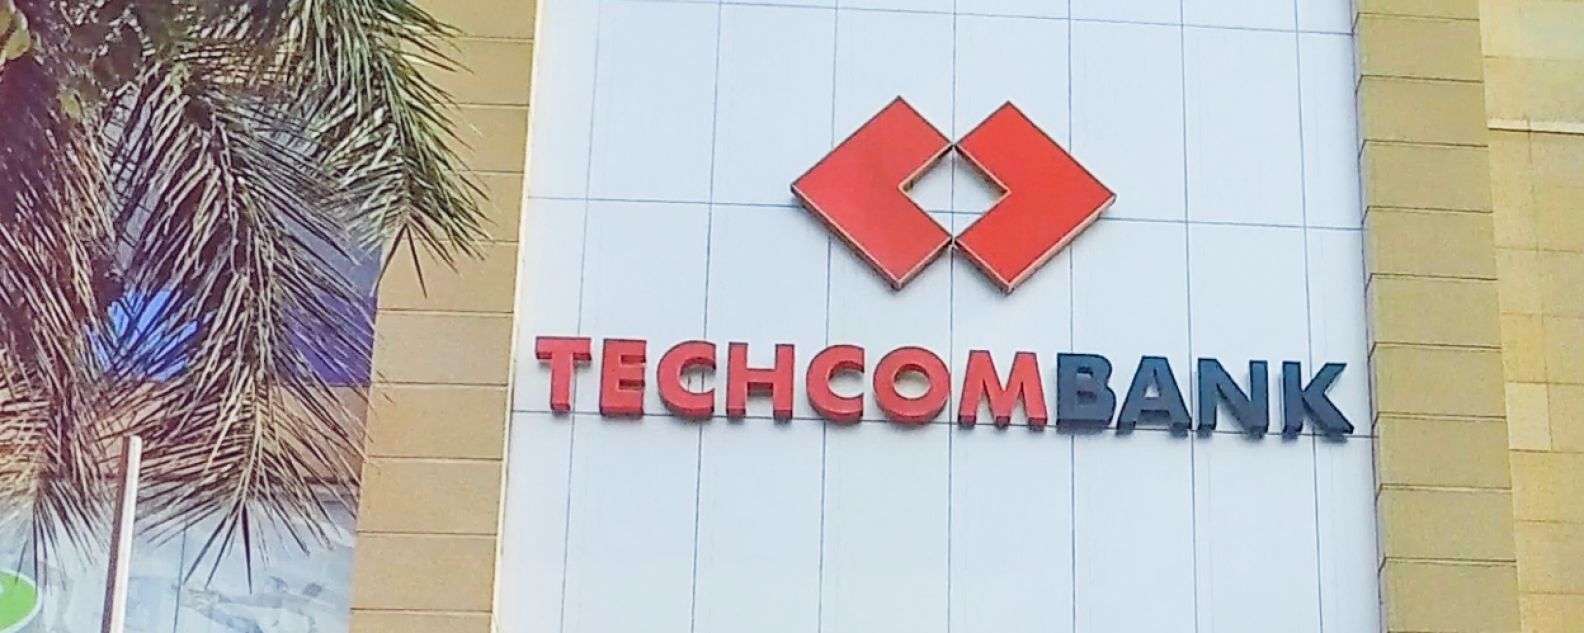 Techcombank 건물 외관